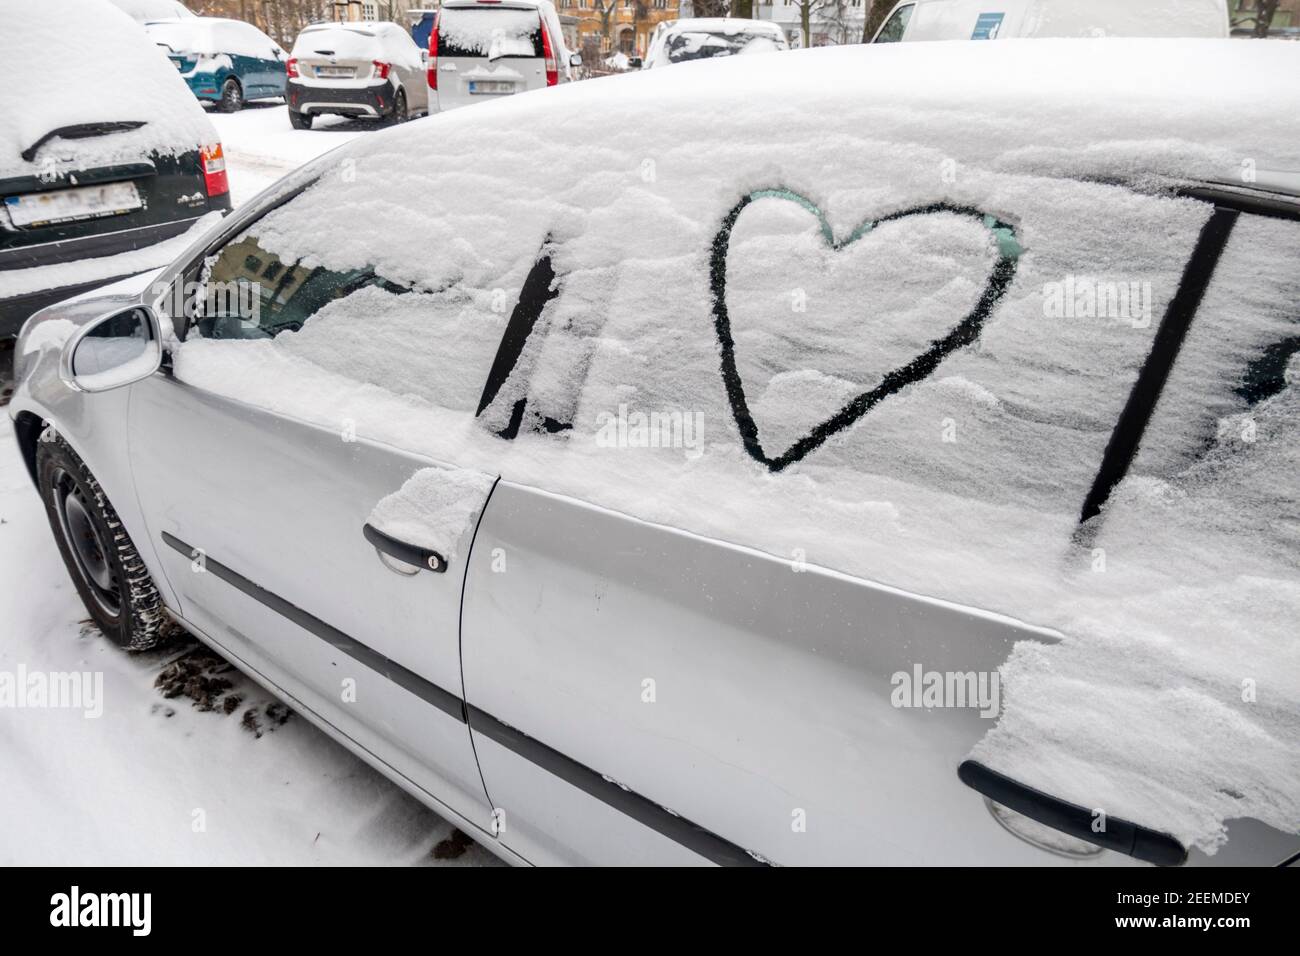 Wintereinbruch in Berlin am 08.02.2021 , Verschneite Autos in Kreuzberg, Herz in Schnee gemalt. Stockfoto